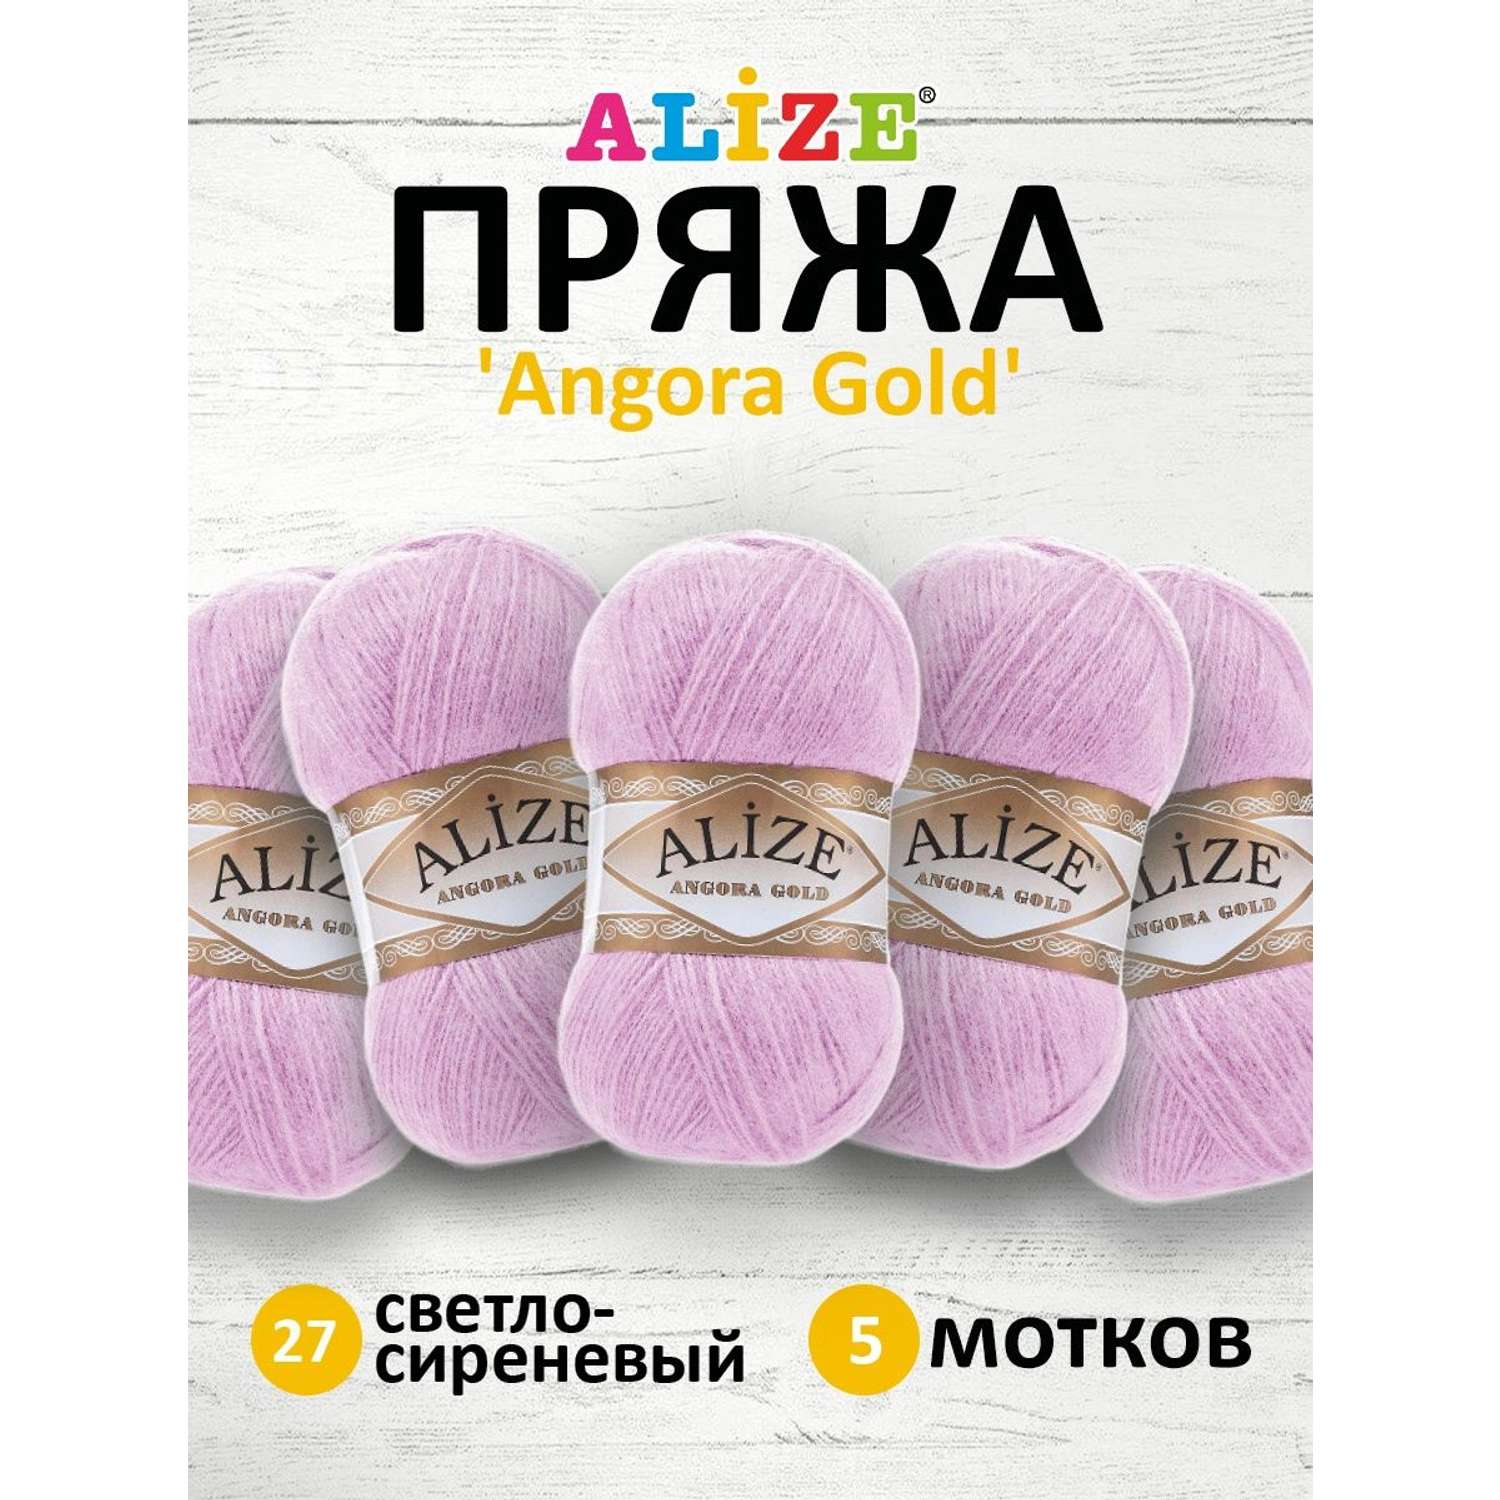 Пряжа Alize мягкая теплая для шарфов кардиганов Angora Gold 100 гр 550 м 5 мотков 27 светло-сиреневый - фото 1